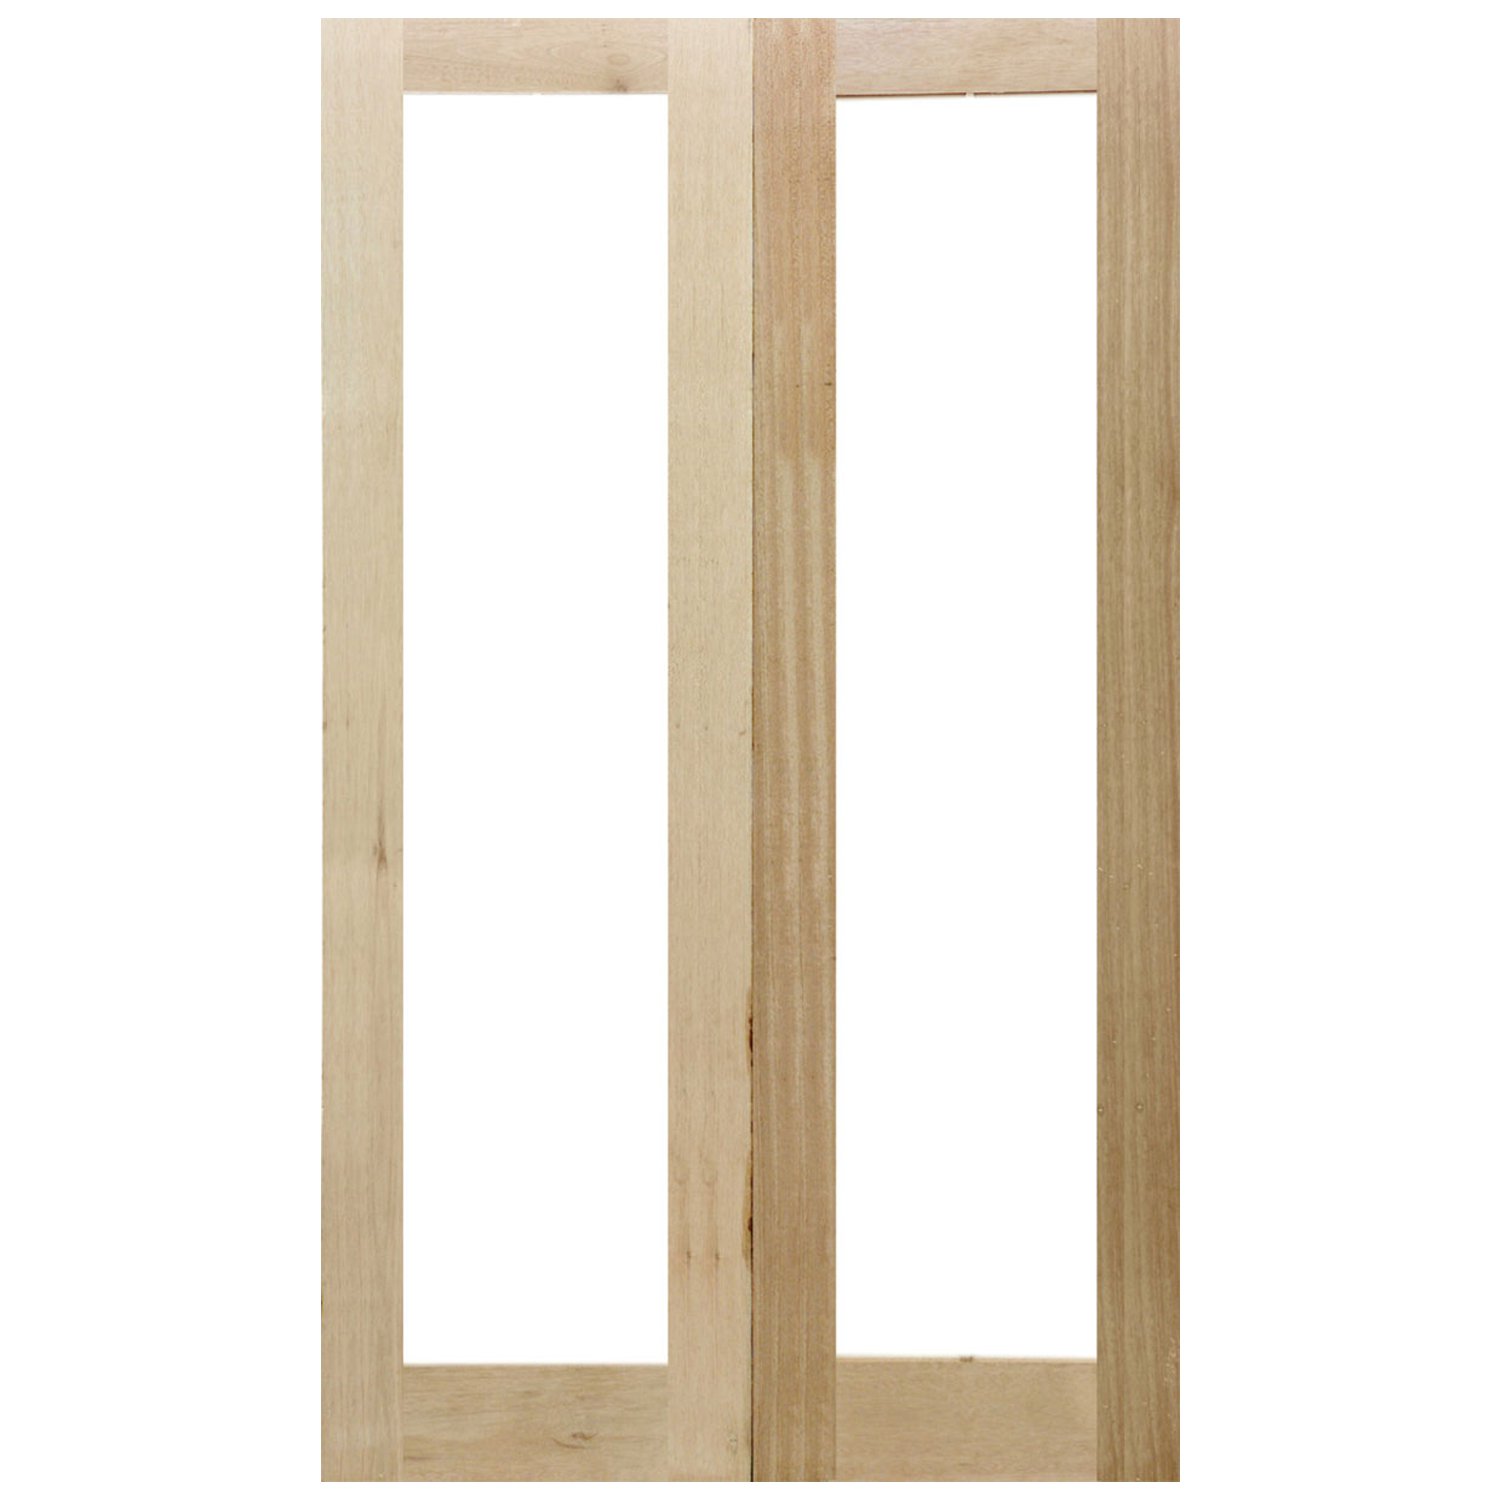 Double Doors Carve 6